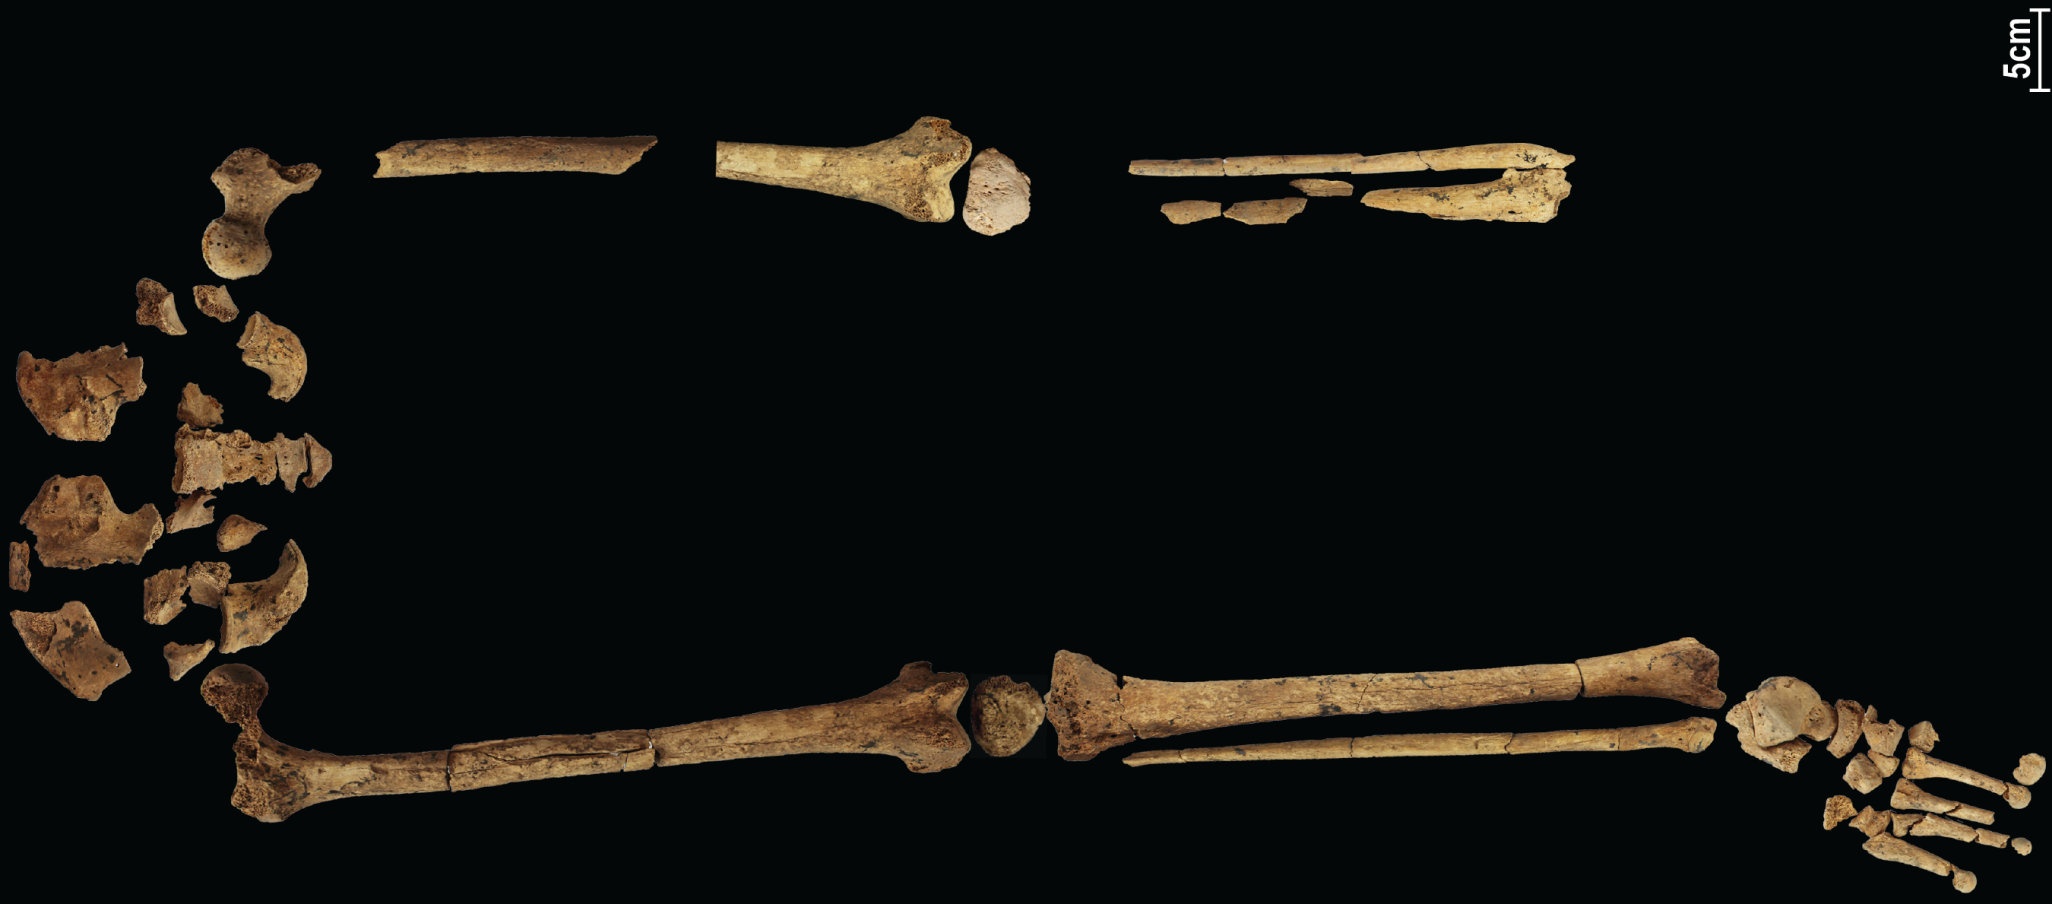 가장 오래된 것으로 알려진 복잡한 수술을 보여주는 31,000년 된 해골이 역사를 다시 쓸 수 있습니다! 4